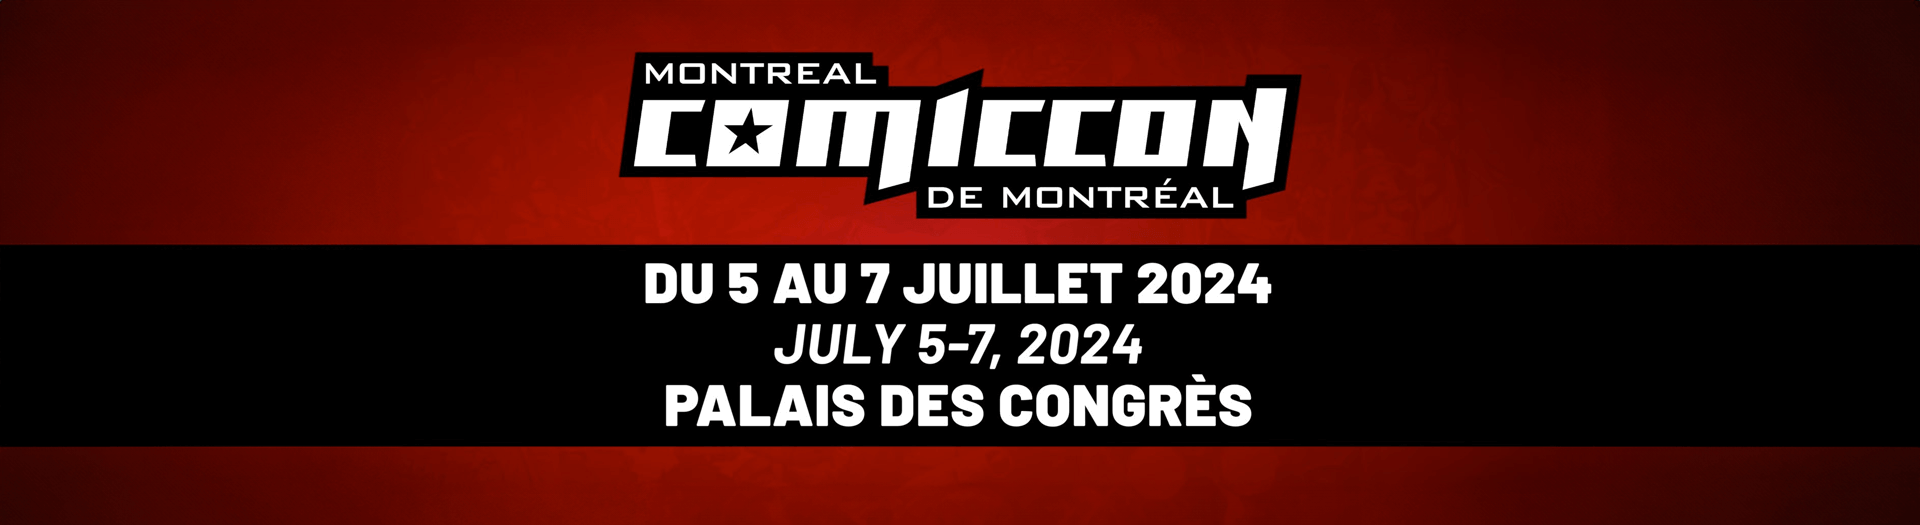 Comiccon de Montréal, Palais des congrès de Montréal